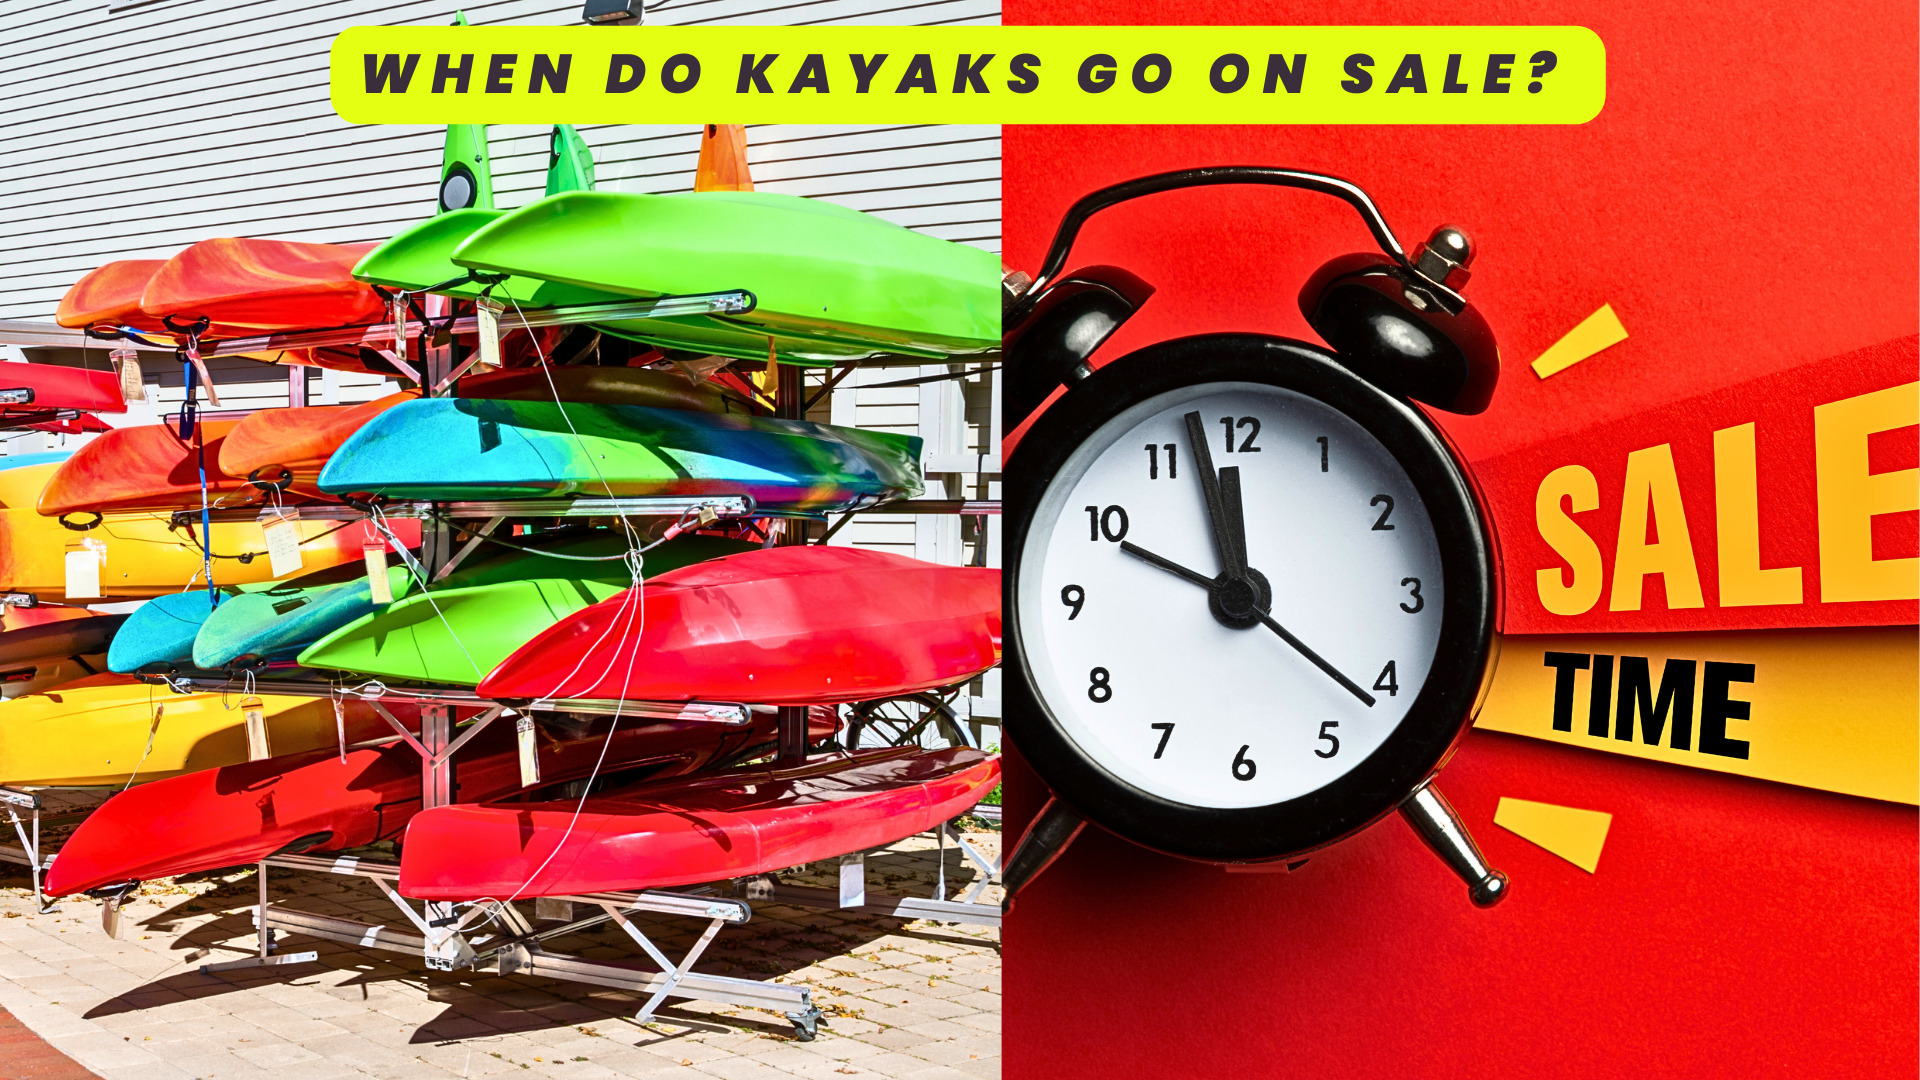 When Do Kayaks Go on Sale?